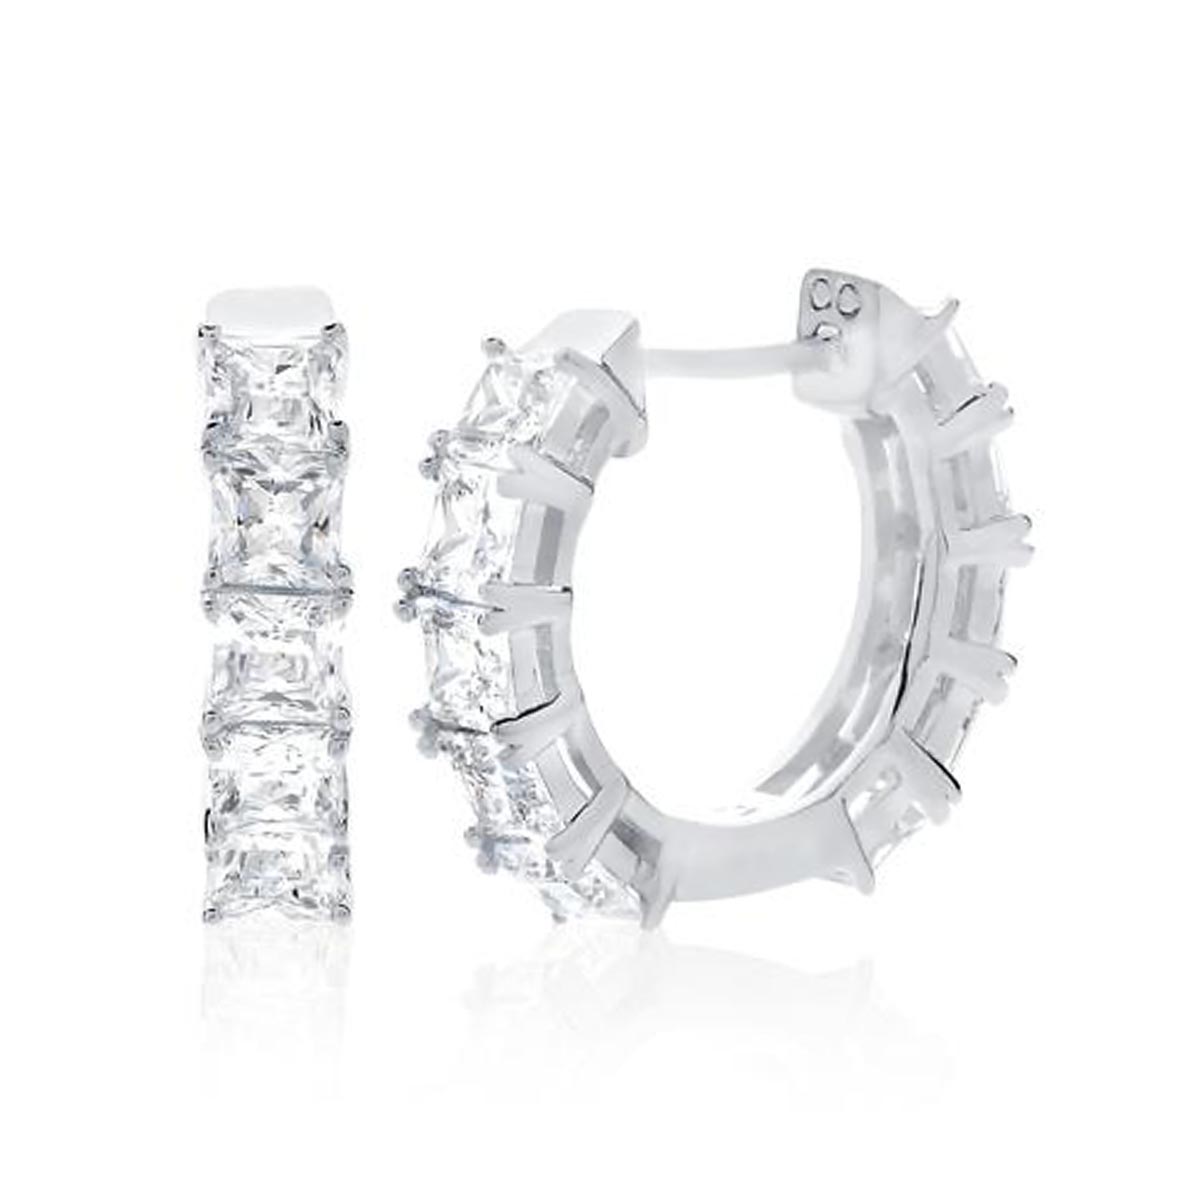 Crislu Cubic Zirconia Princess Cut Huggie Hoop Earrings in Sterling Silver with Platinum Finish